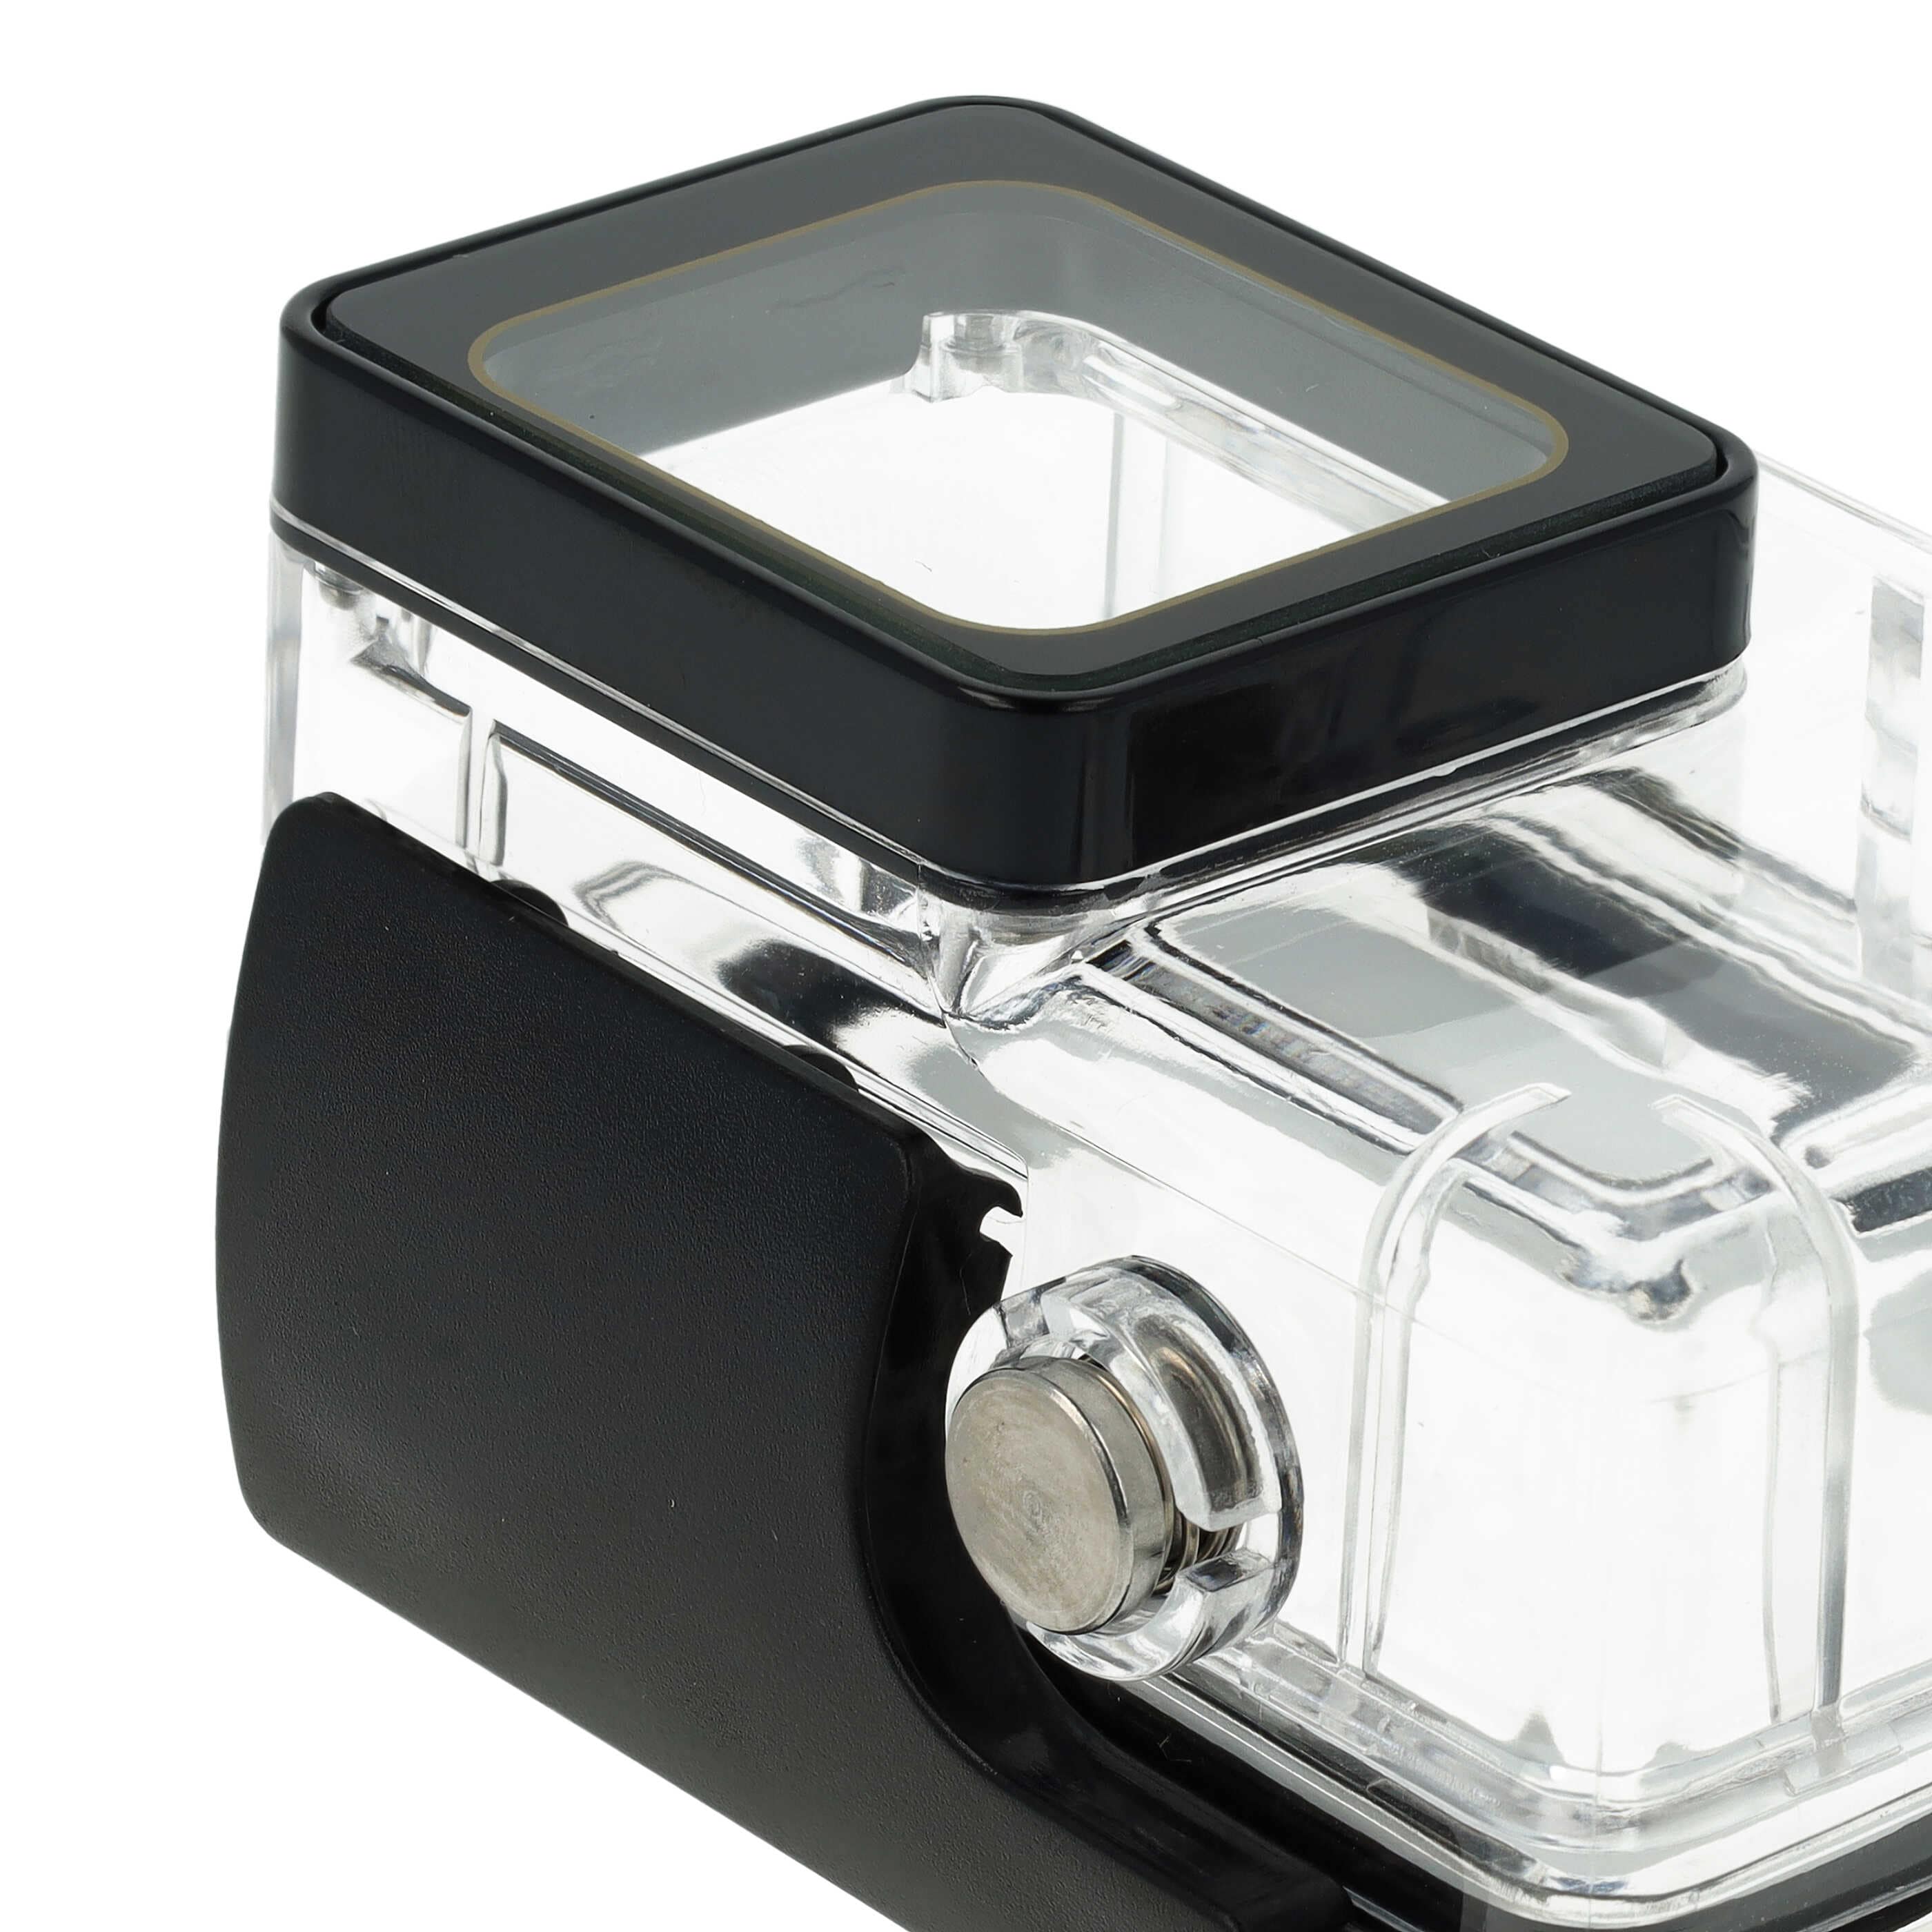 Boîtier étanche pour action cam GoPro Hero 5, 6, 7 - profondeur max. 40 m